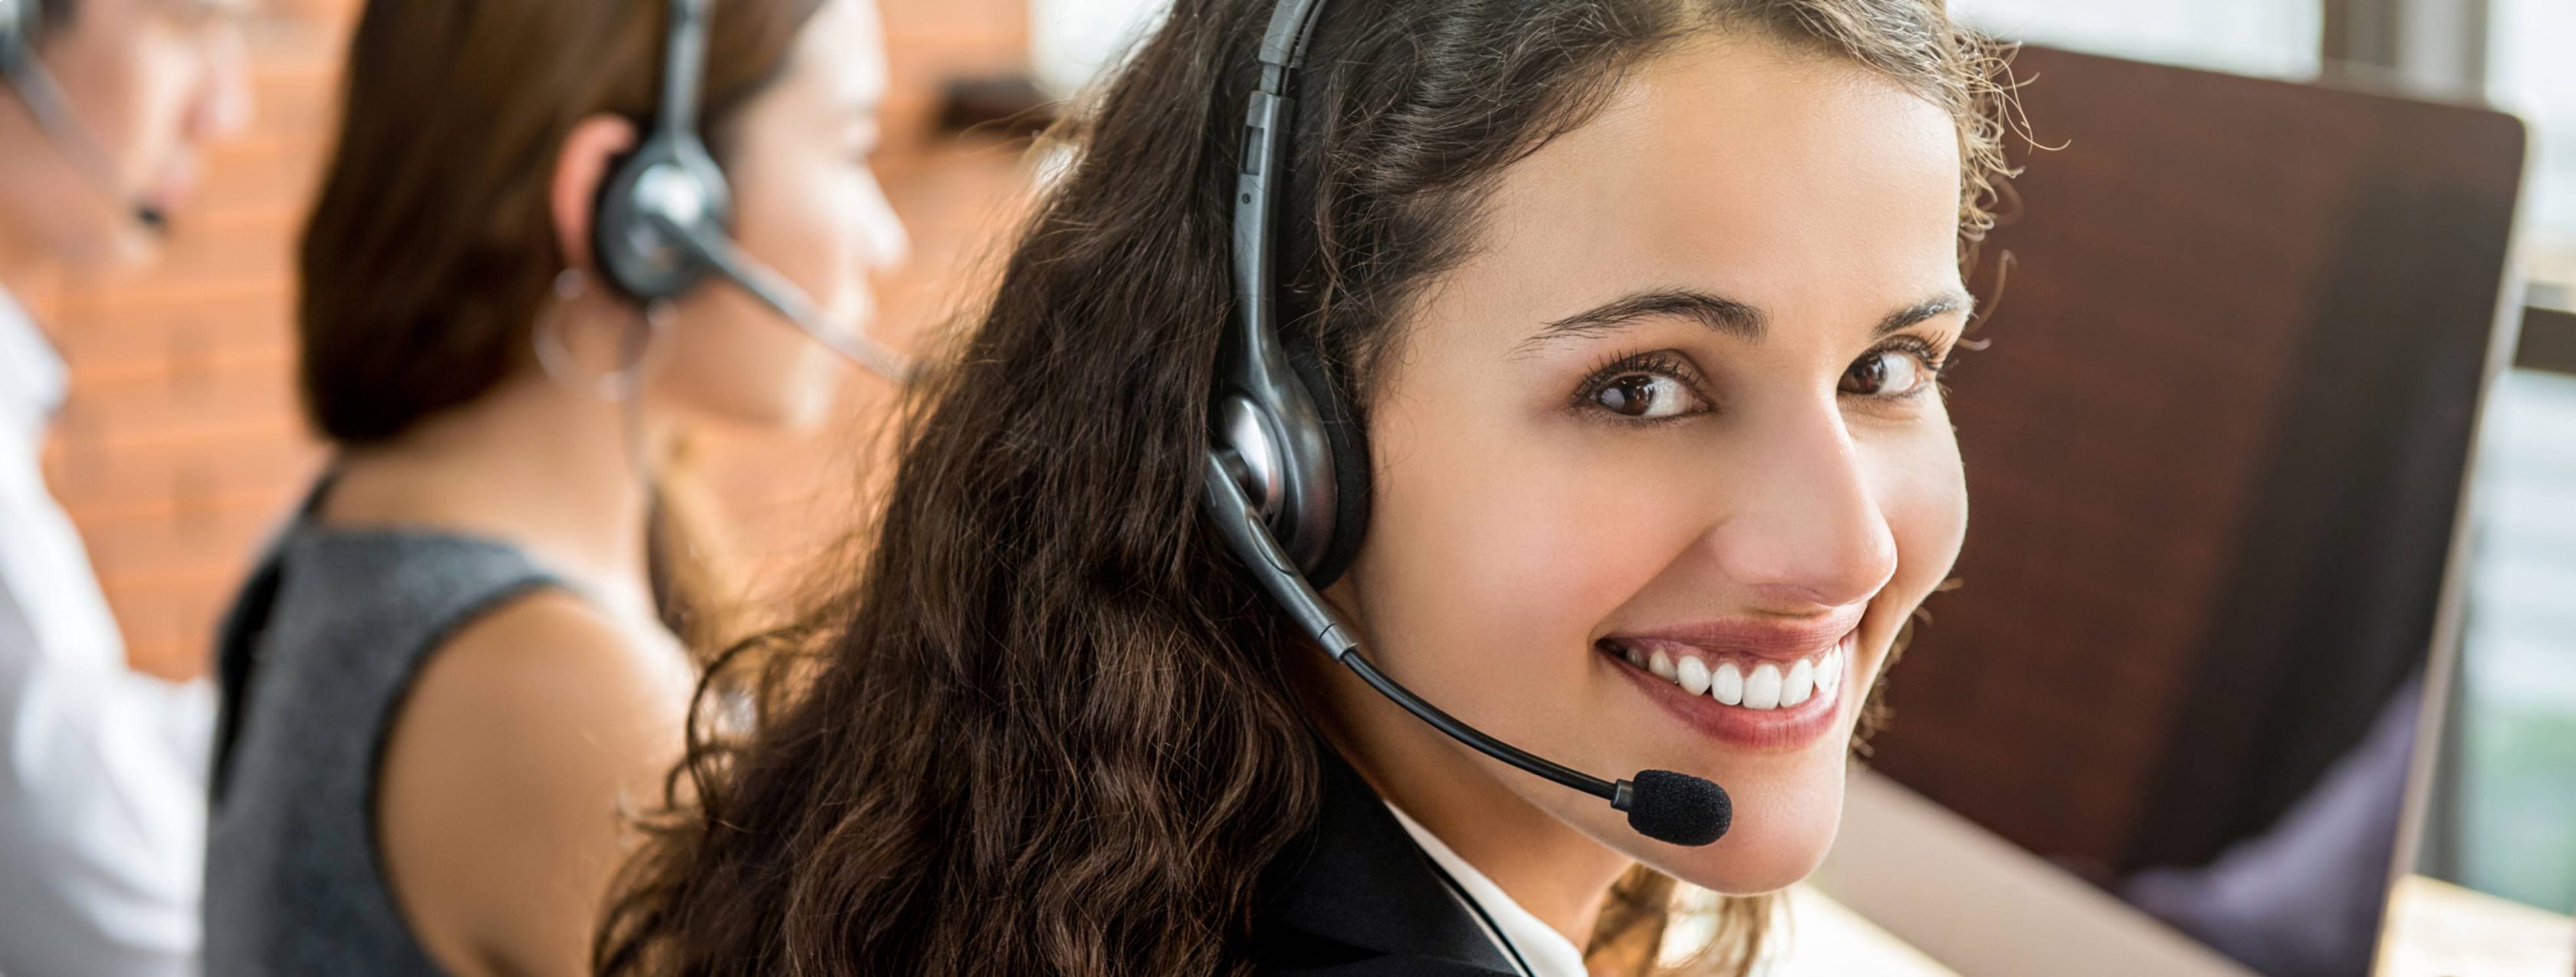 Χαμογελαστή υπάλληλος εξυπηρέτησης πελατών εργάζεται στο τηλεφωνικό κέντρο.